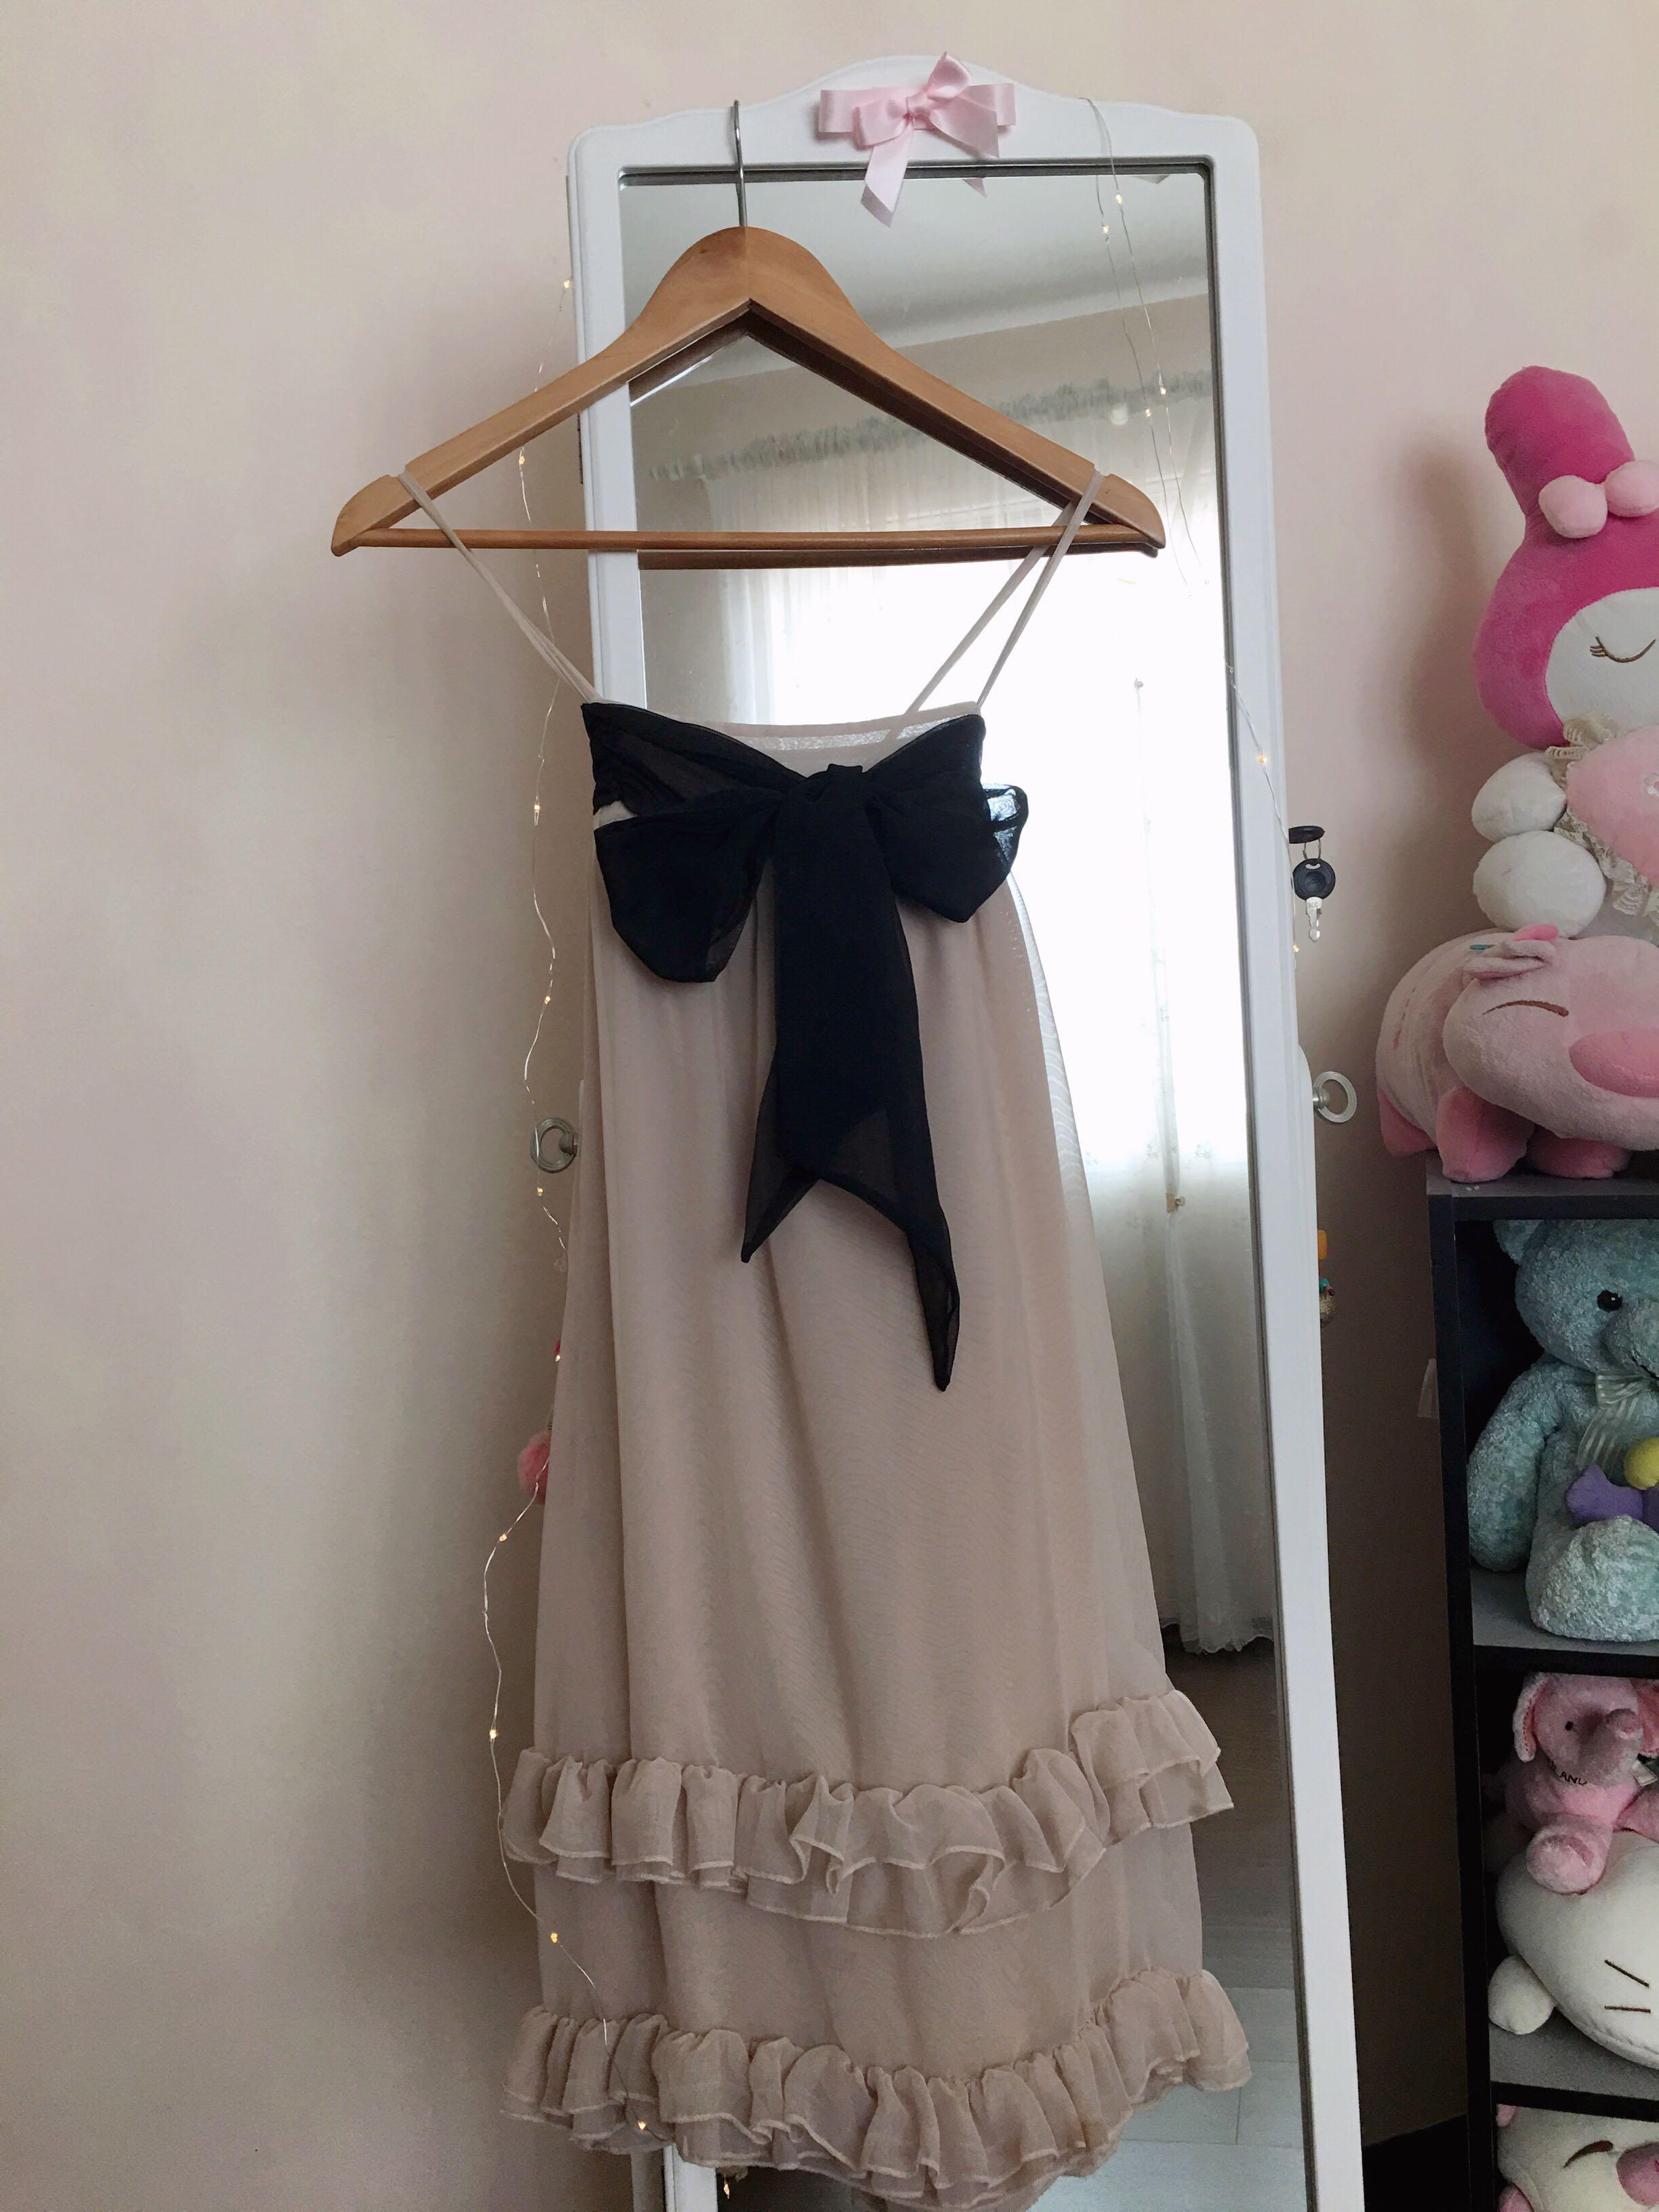 h&m pink ruffle dress